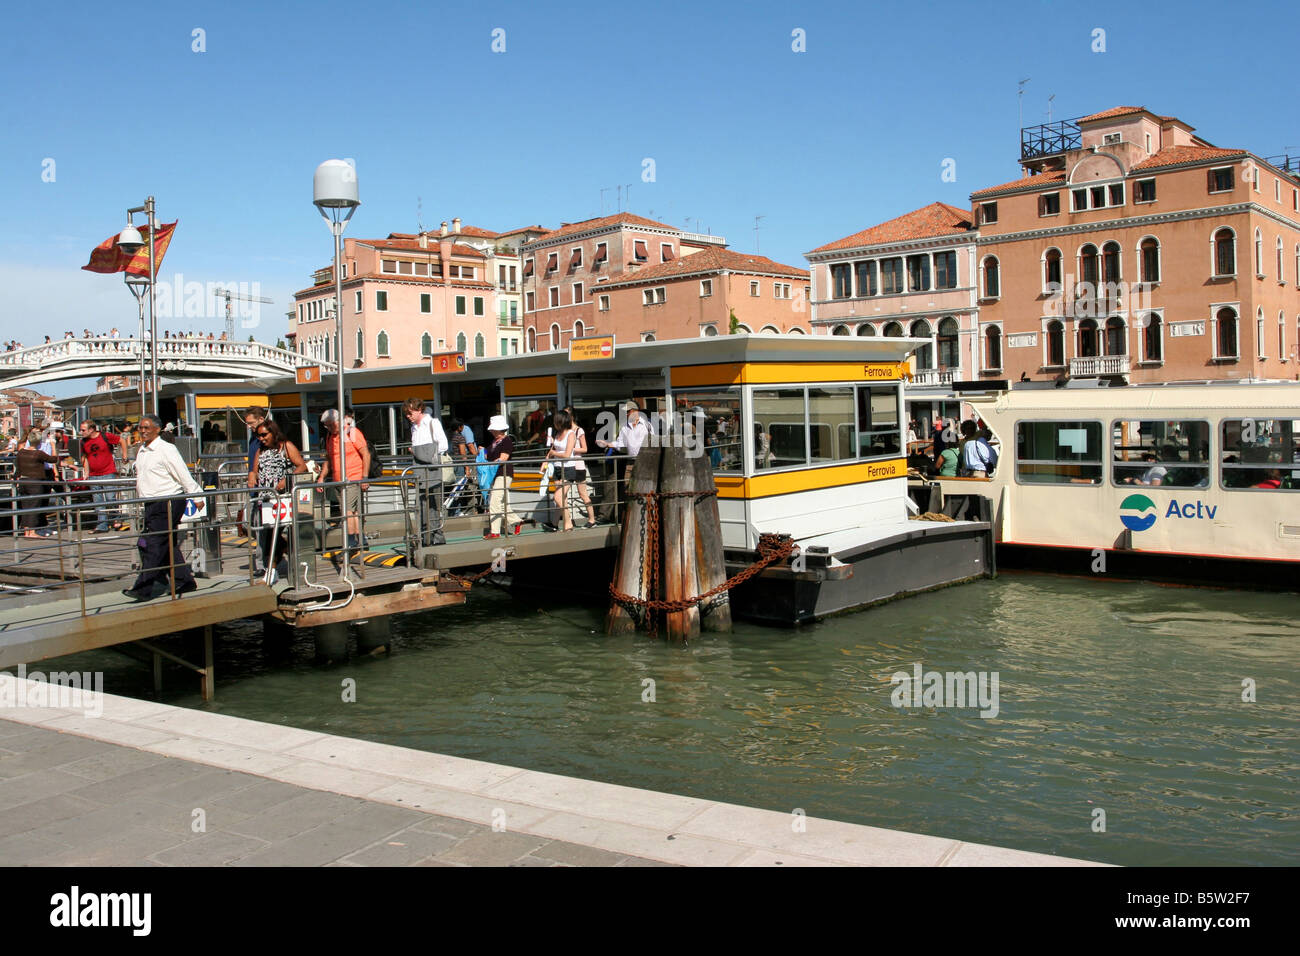 Arrêt de bus de l'eau à Venise Vénétie Italie Ferrovia Banque D'Images